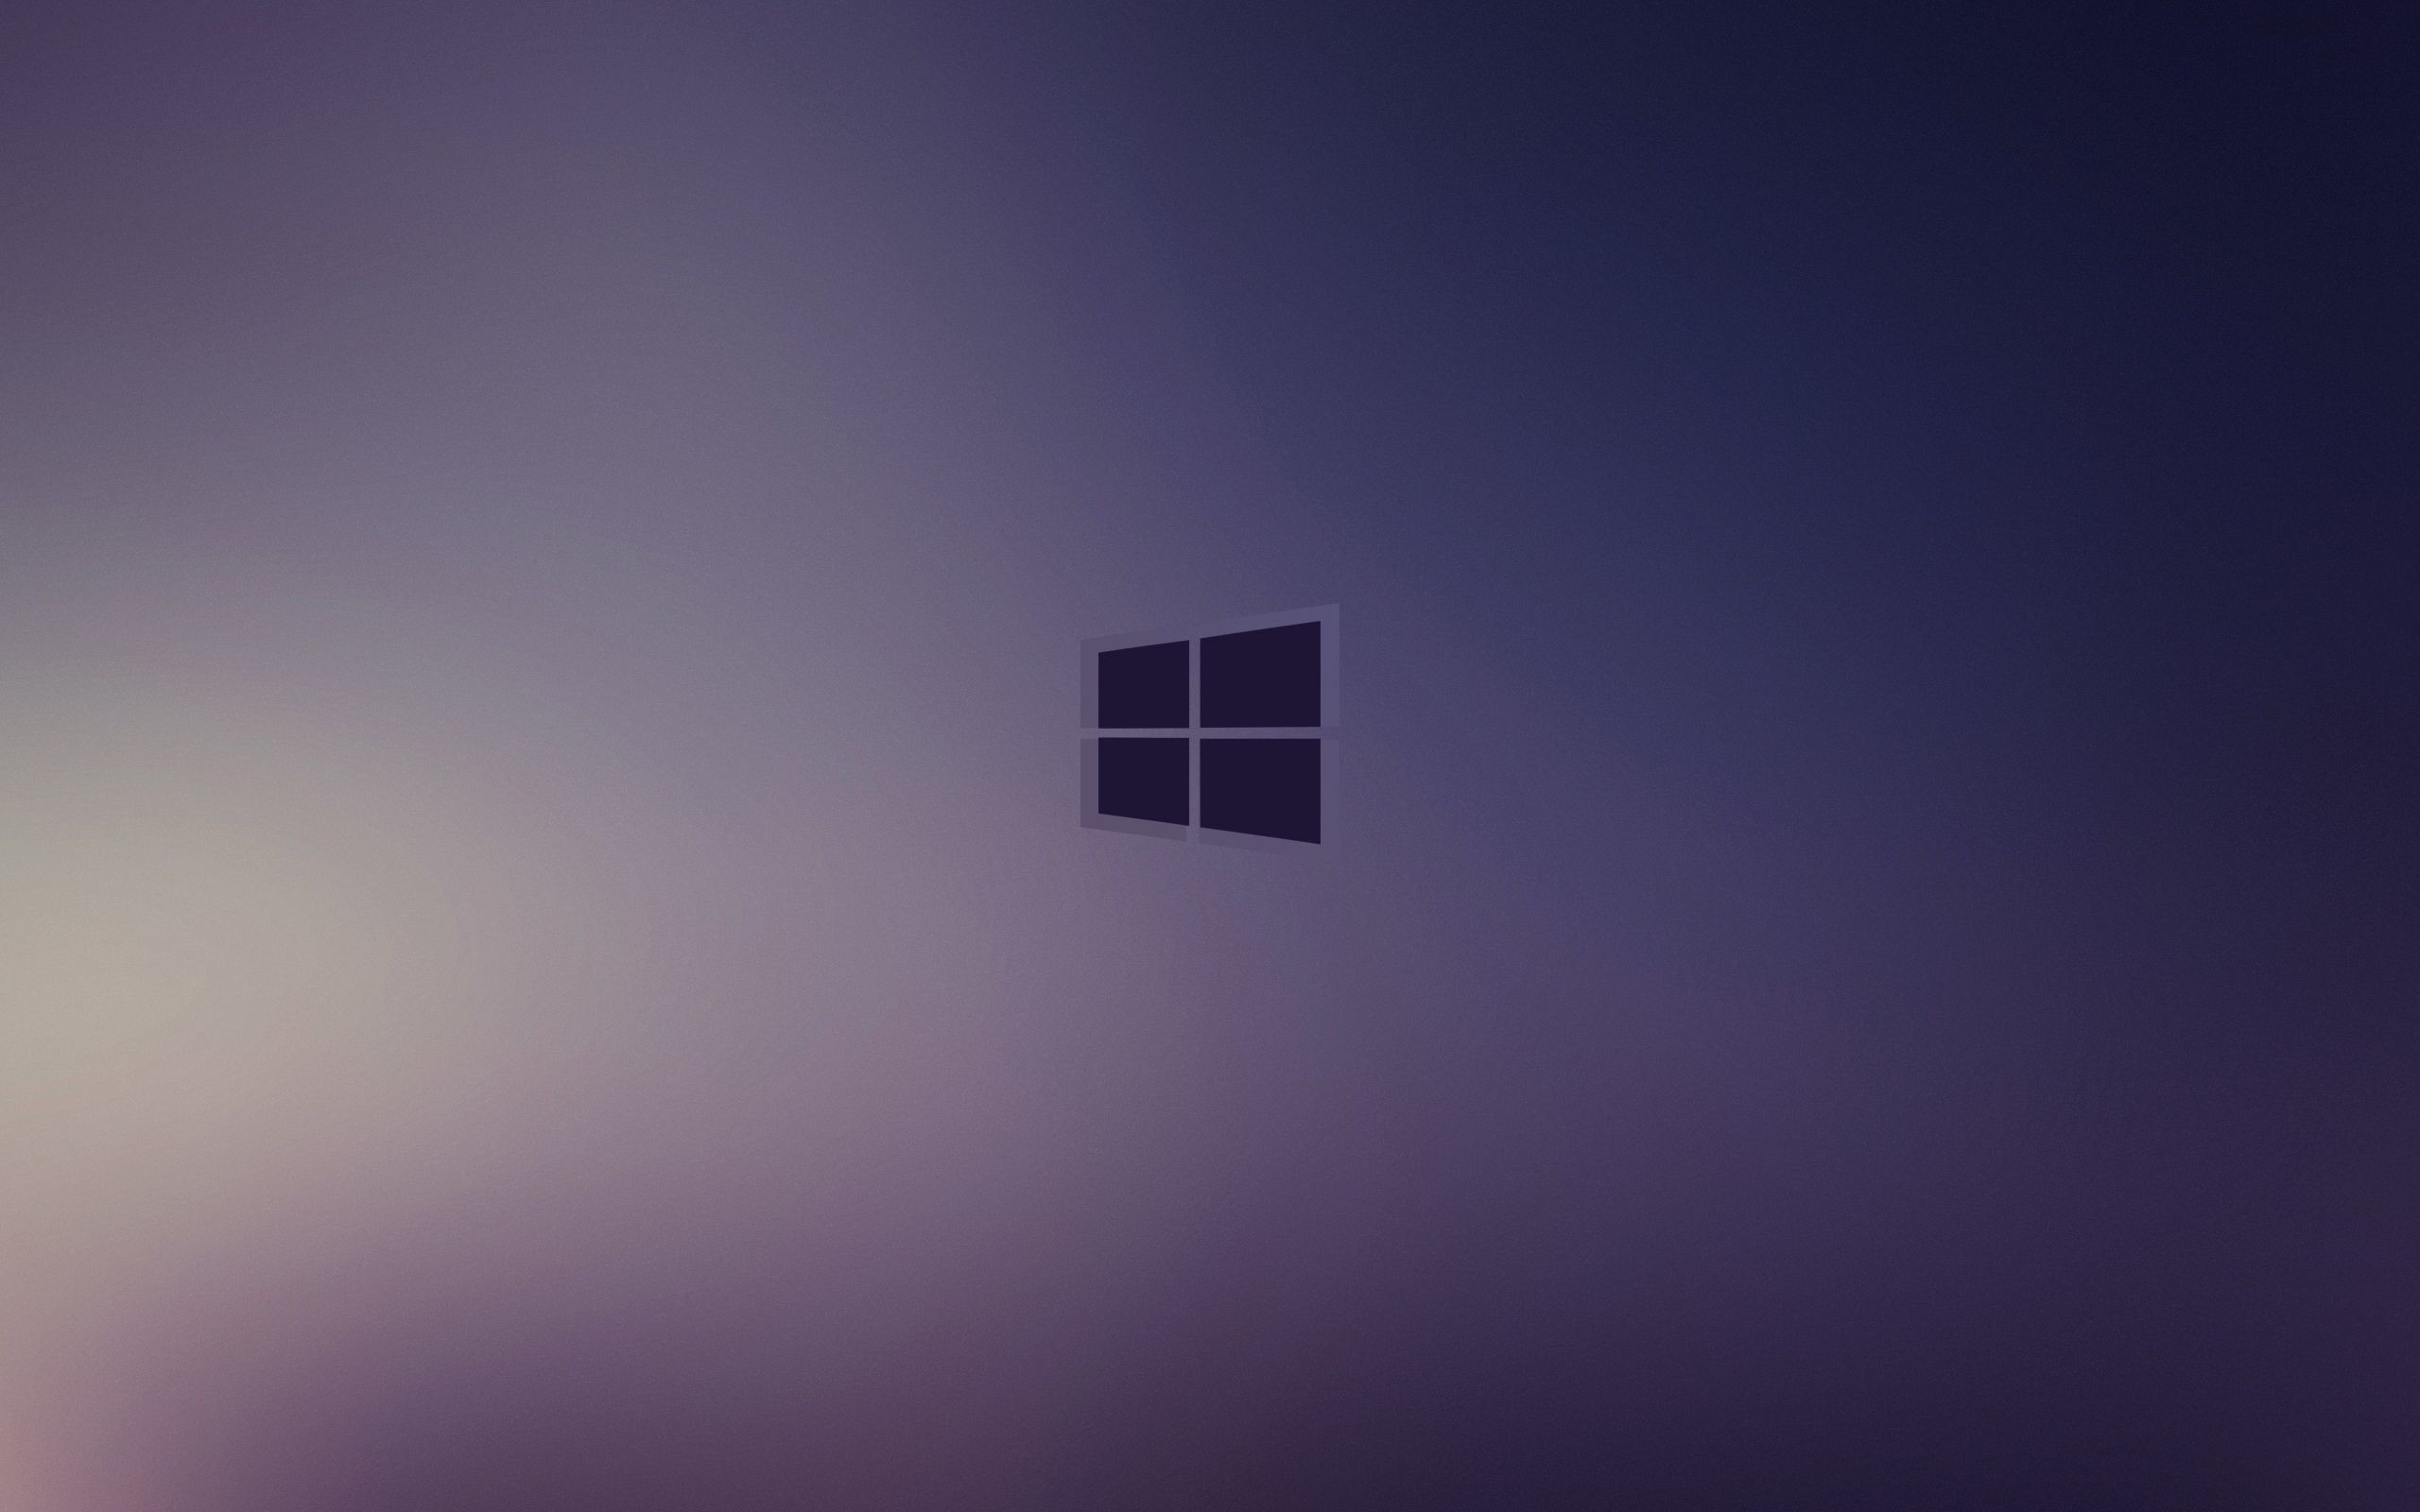 Windows 10 Minimal Hd Wallpaper 2022 2560x1600